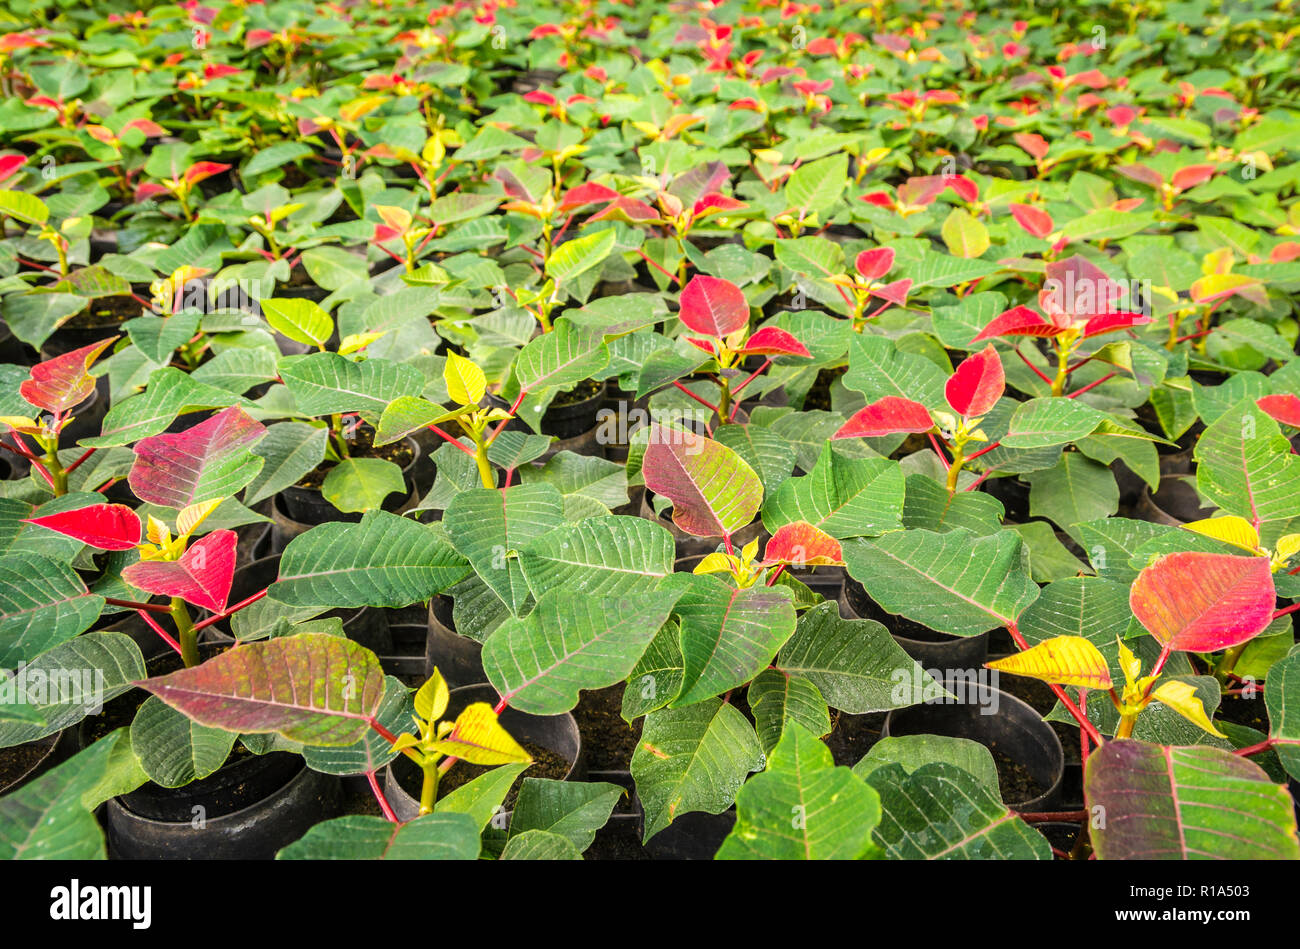 Les petites usines de poinsettia ou étoile de Noël fleur.Euphorbia pulcherrima est une plante de jardin populaire associé à festivités d'hiver Banque D'Images